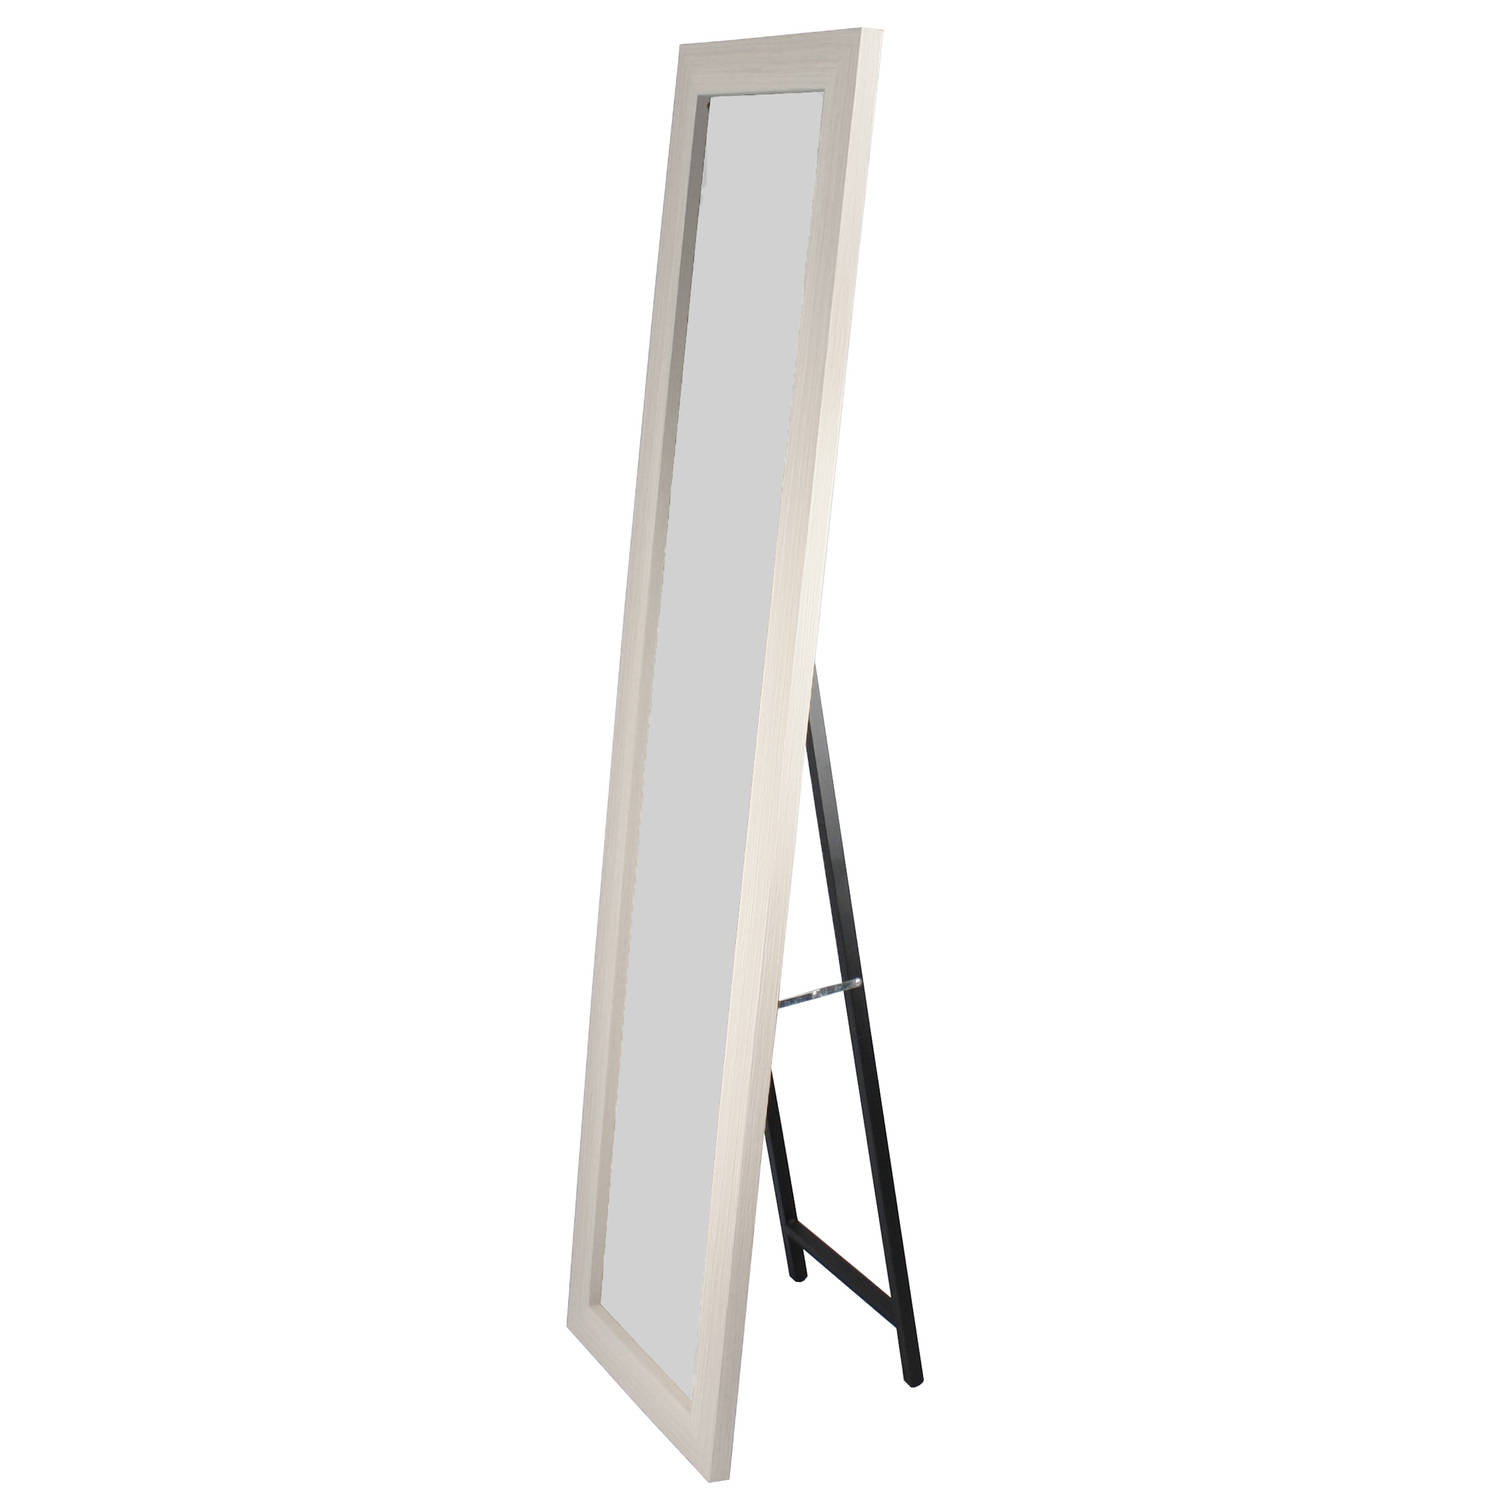 Voorbijgaand Competitief Doordringen Lowander staande spiegel 160x40 cm - passpiegel / vrijstaande garderobe  spiegel - wit houten lijst | Blokker